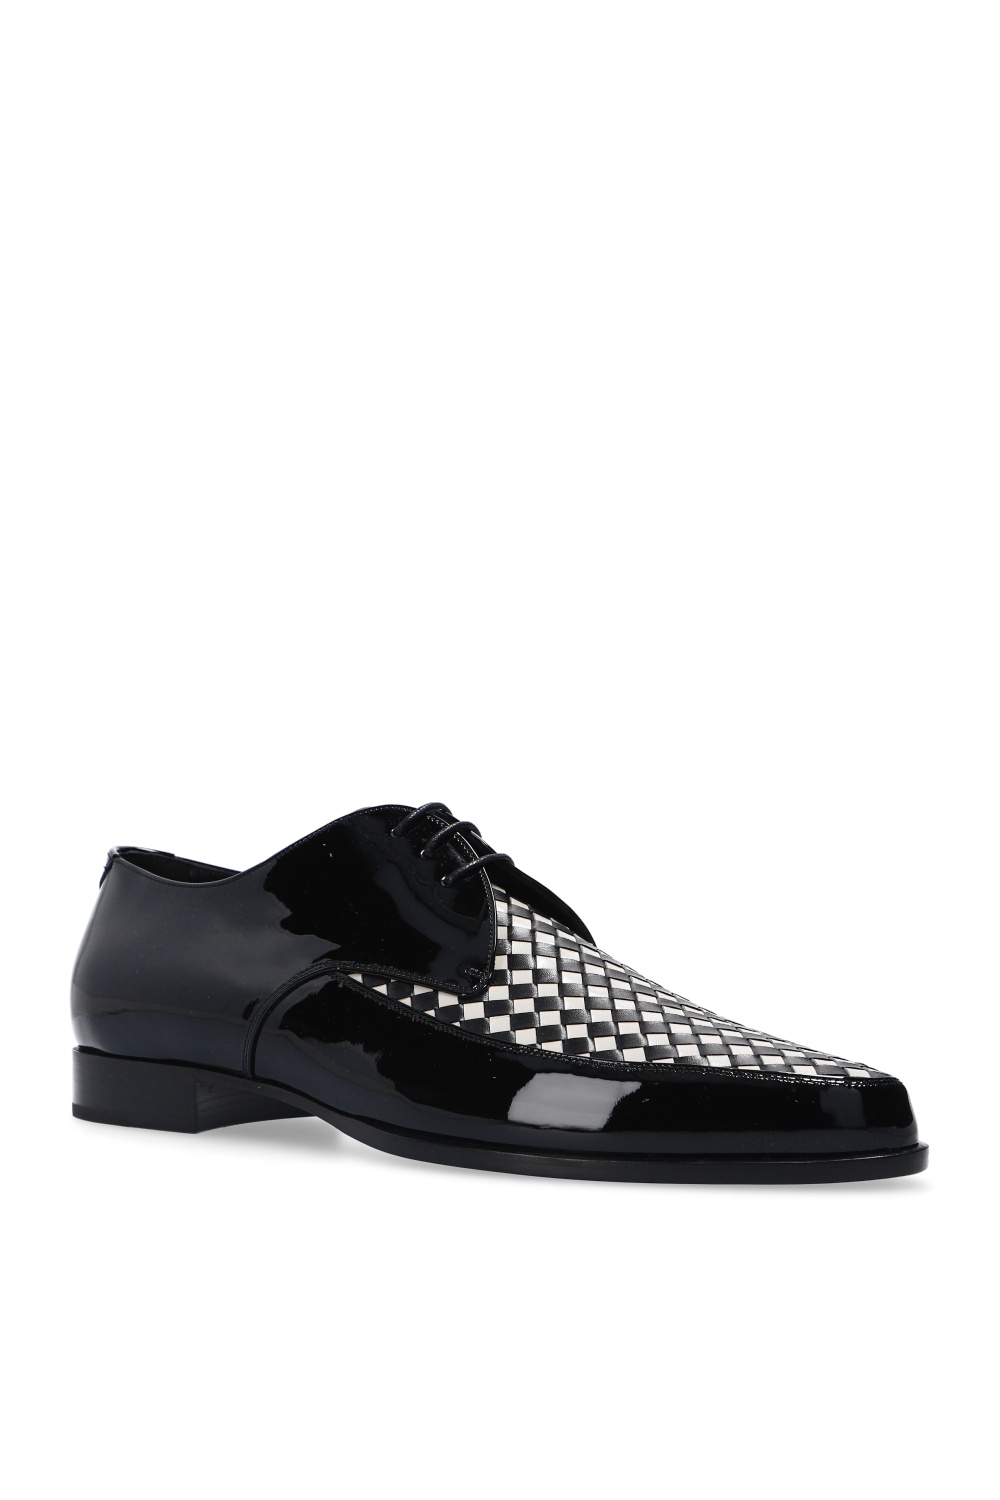 Saint Laurent ‘Marceau’ derby shoes